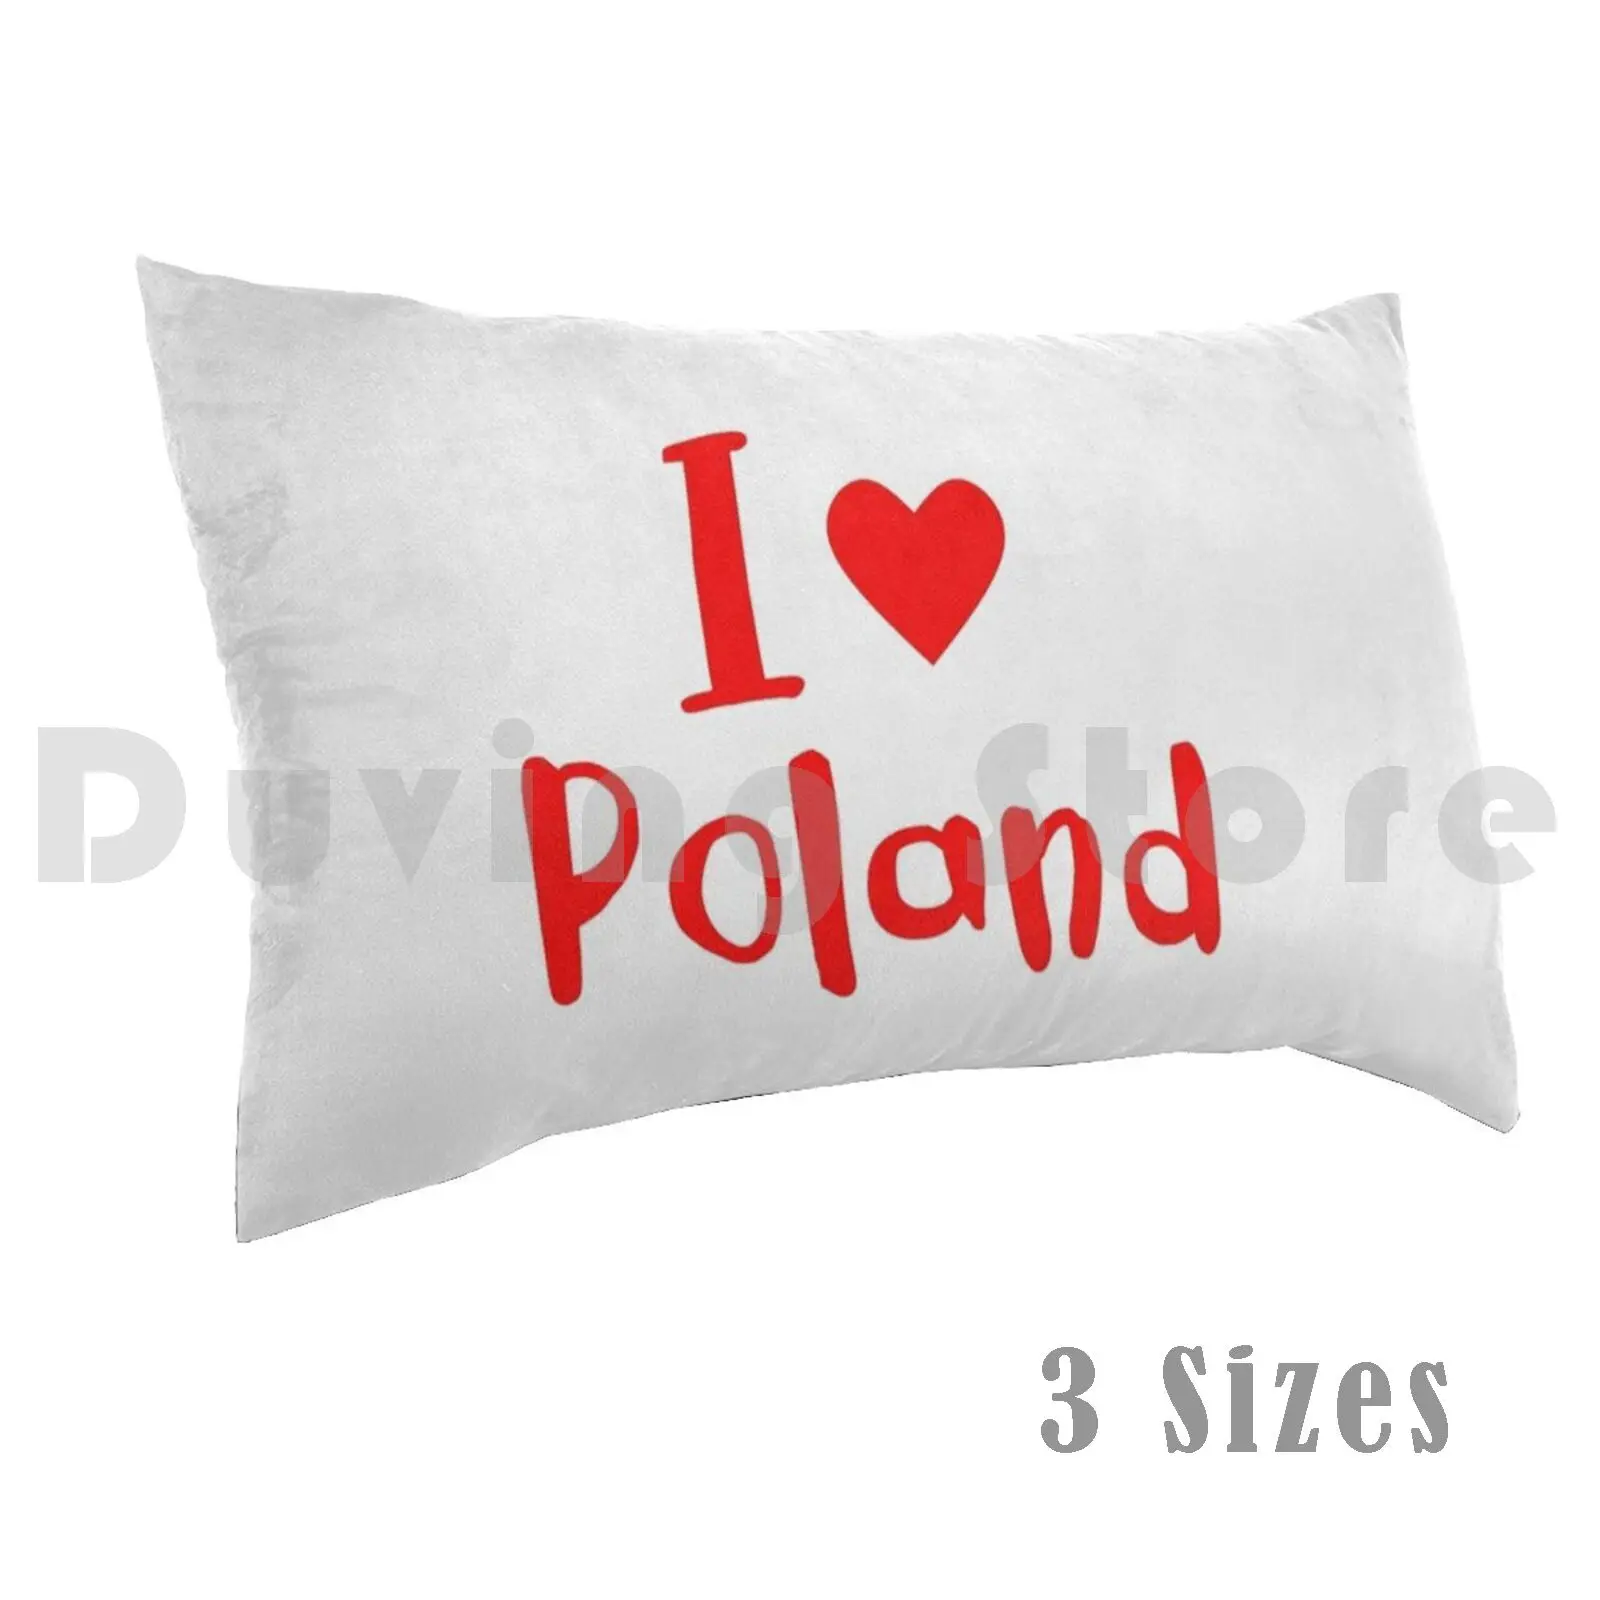 Îmi Place Polonia Pernă Tipărite 35x50 Polonia Varșovia, Polonia poloneză Patrimoniului Pavilion Iubesc Țara Mândrie Europa